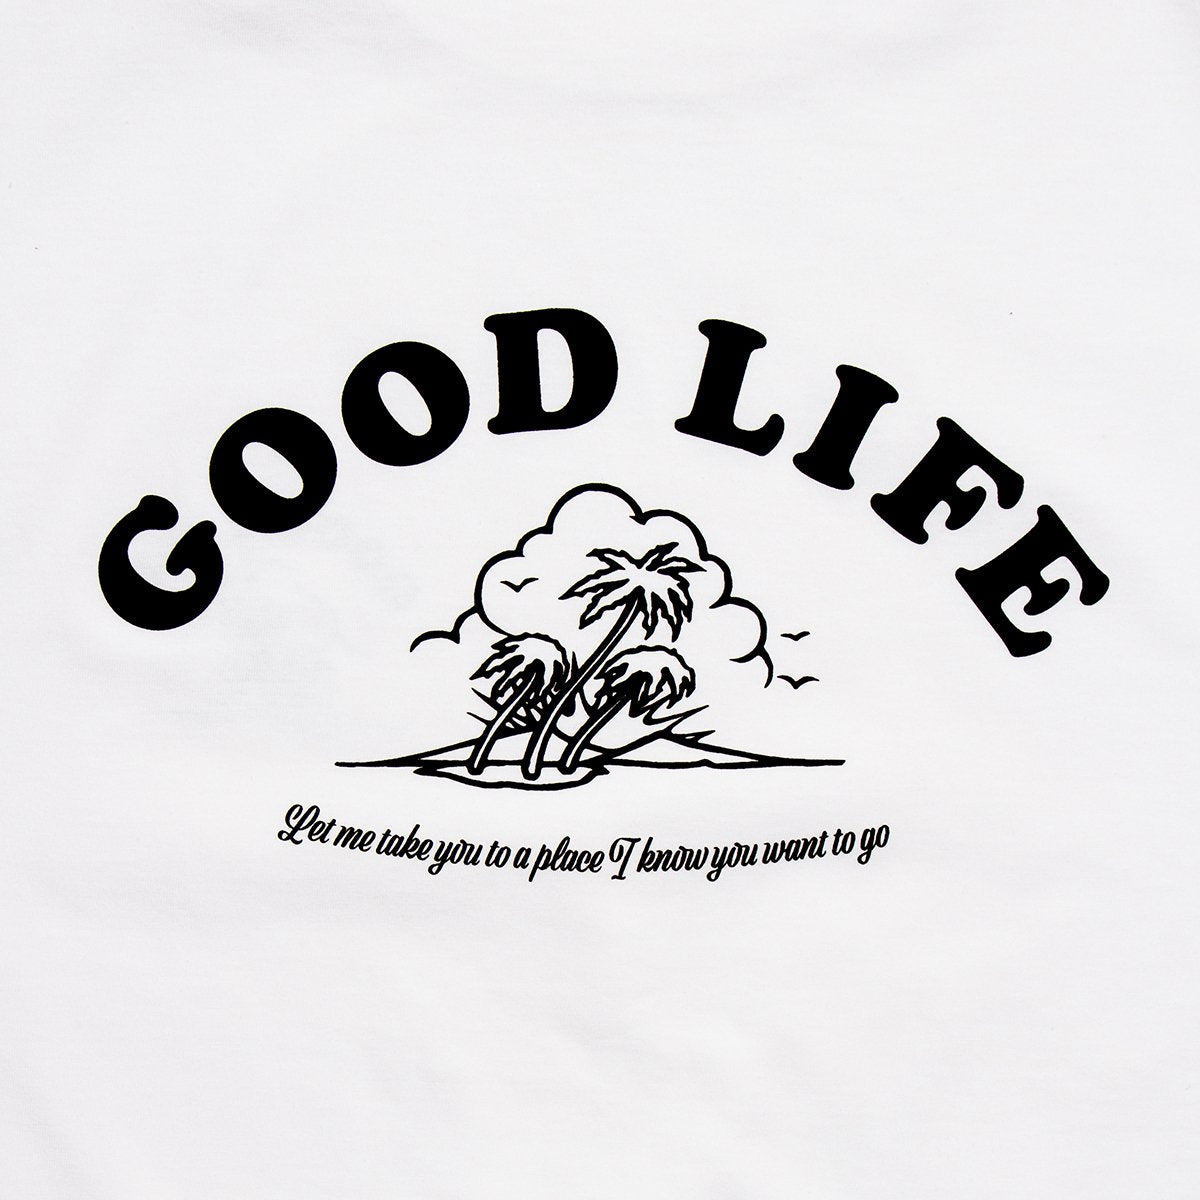 Good Life  - Oversized Tshirt - White